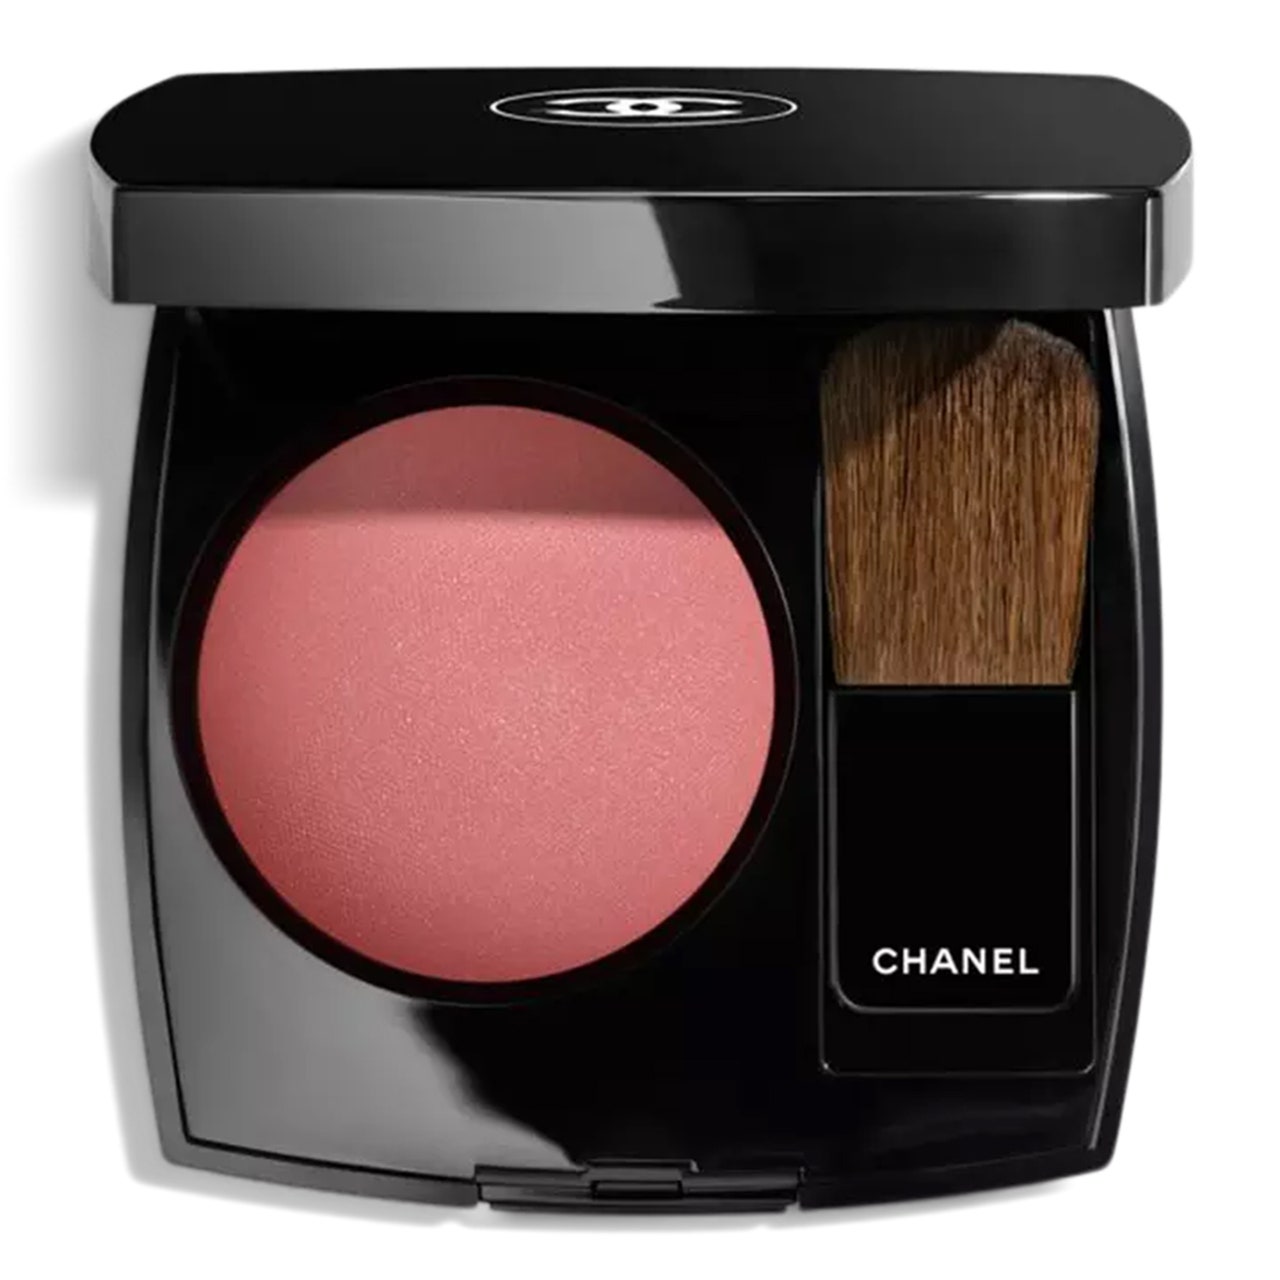 Chanel Joues Contraste Powder Blush in Rose Initial Black Compact aus rosafarbenem Puderrouge auf weißem Hintergrund